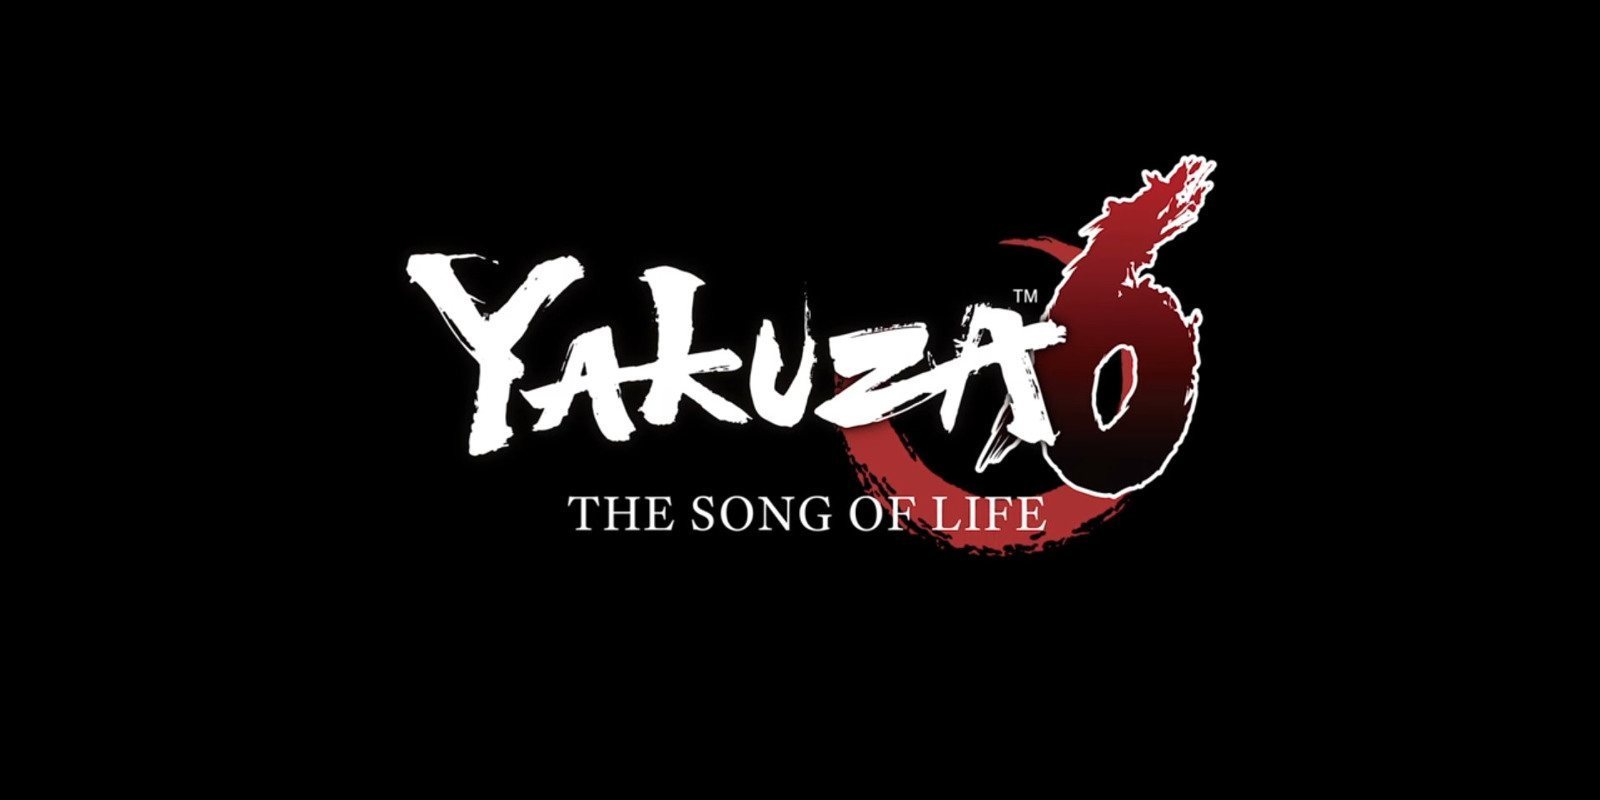 'Yakuza 6' ha rozado el millón de copias vendidas en todo el mundo